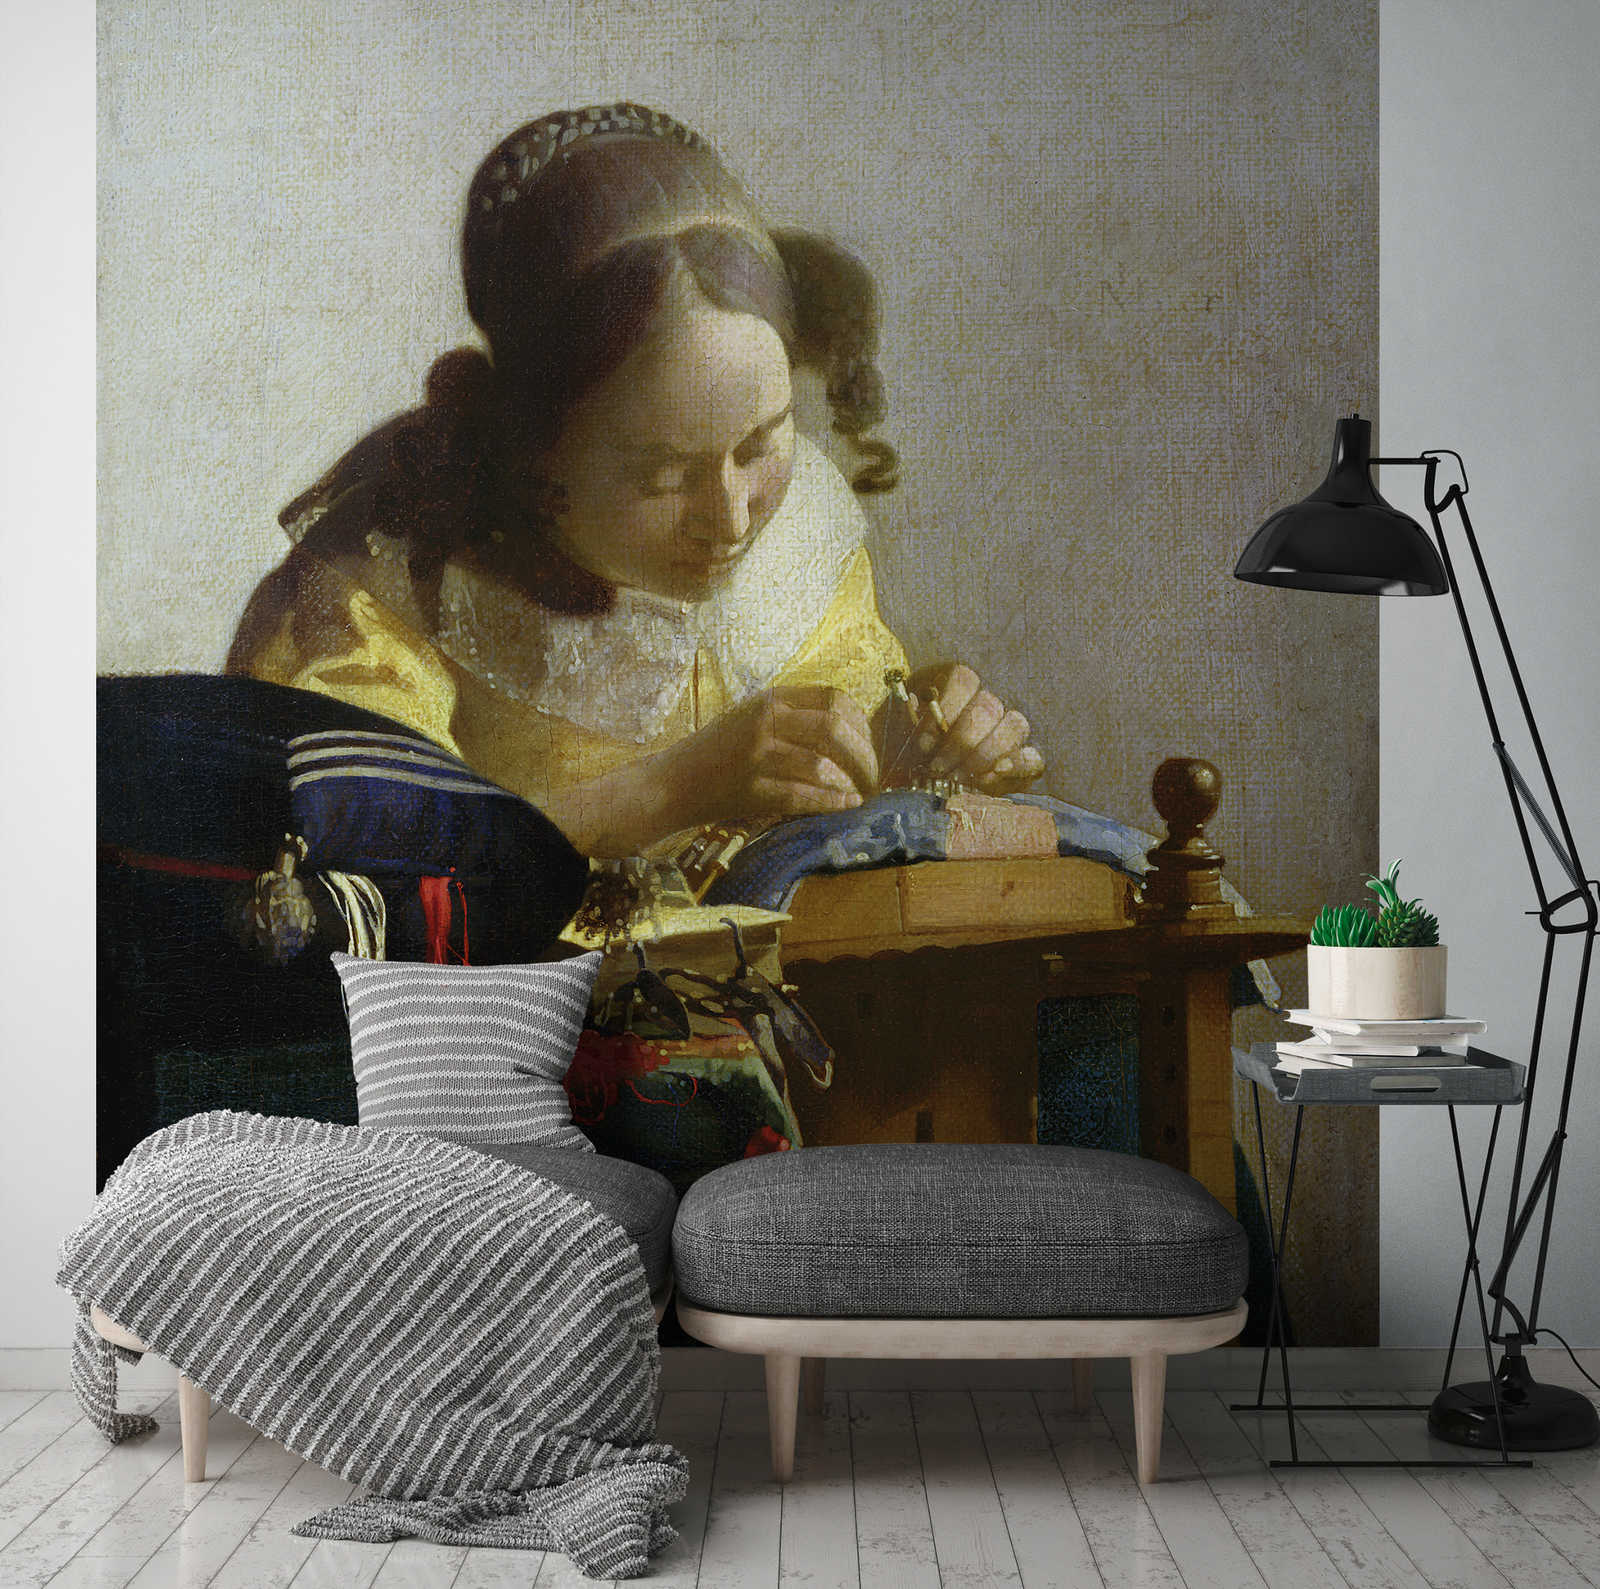             Il murale "Le merlettaie" di Jan Vermeer
        